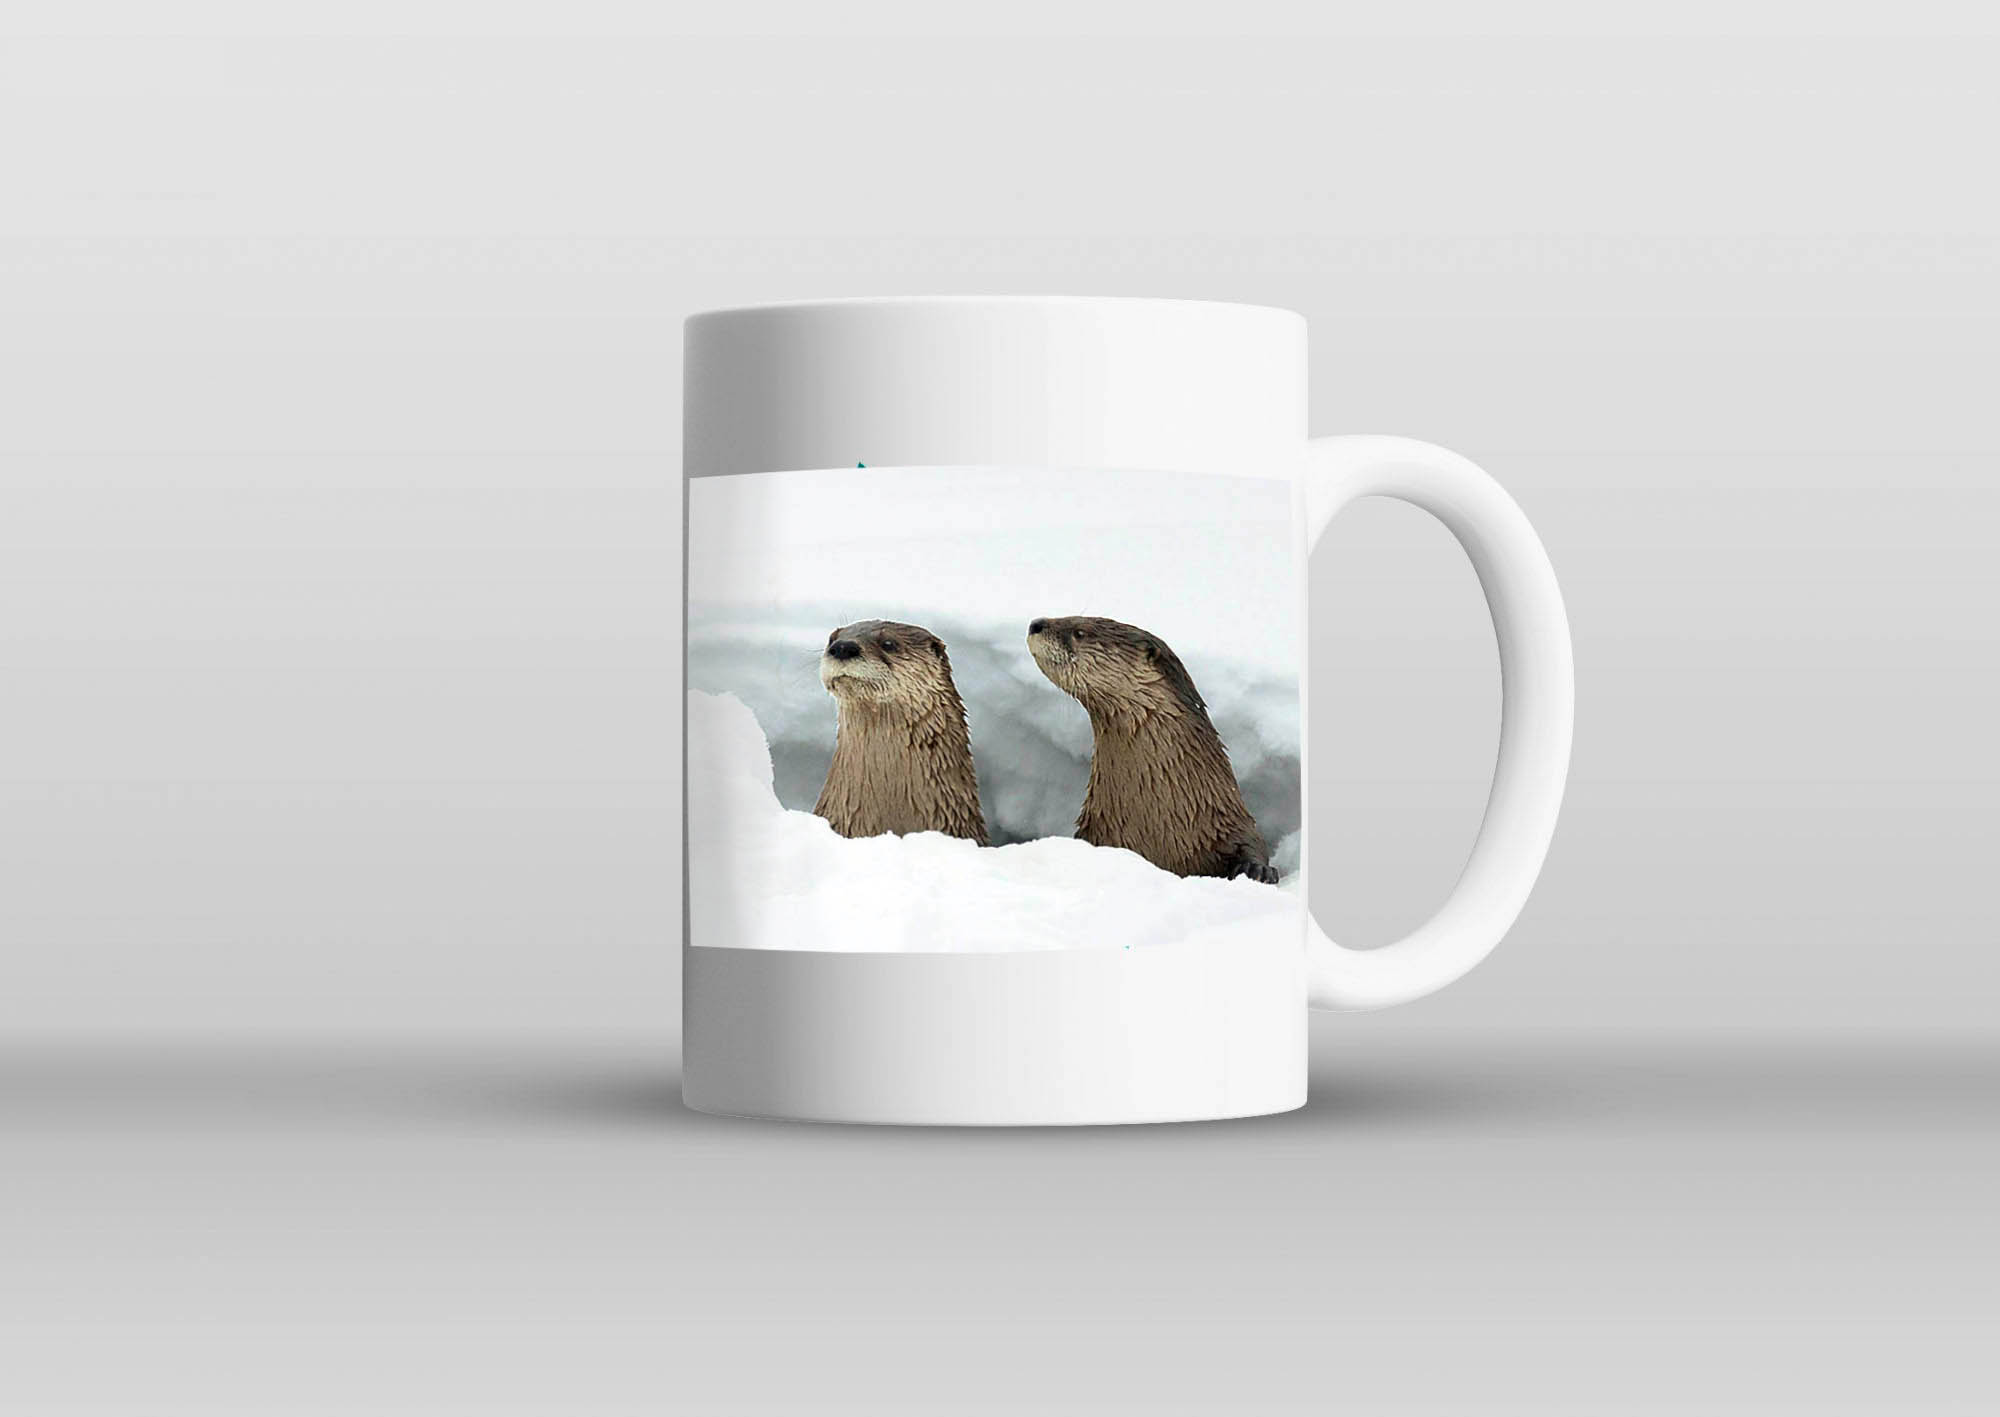 Mug with otter photo.